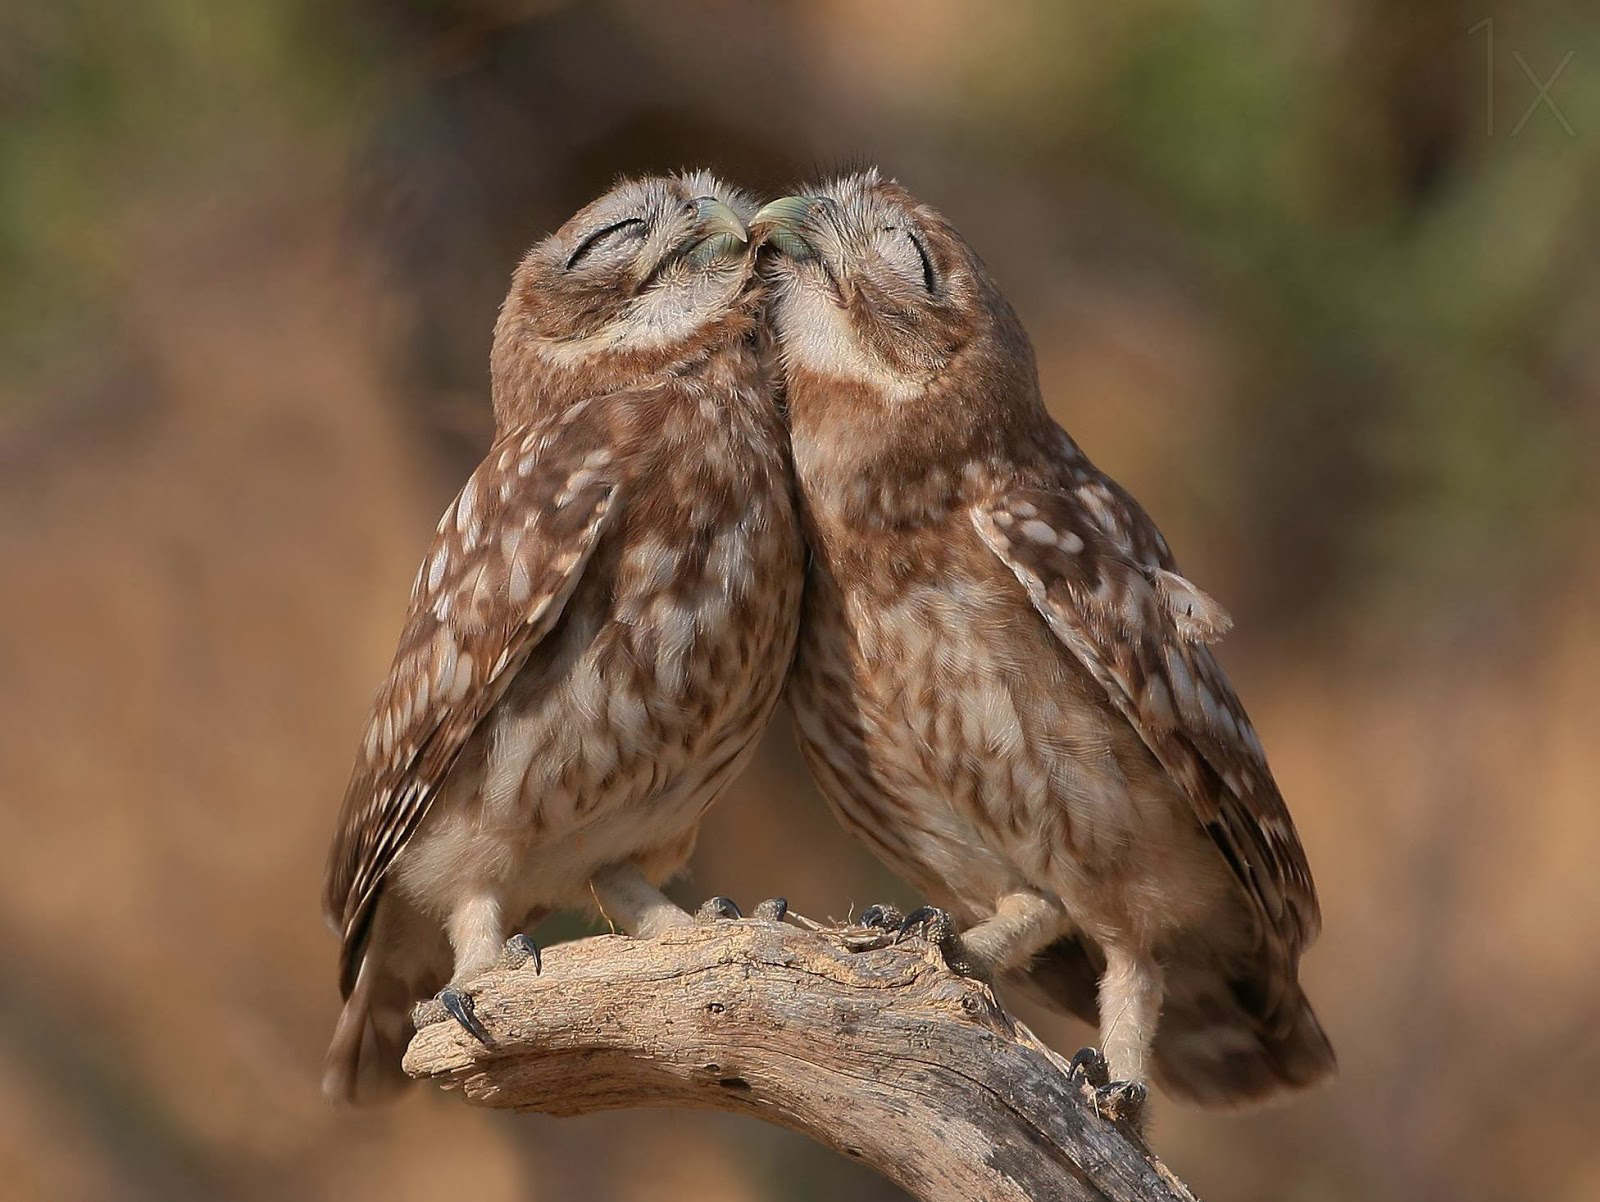 owls cuddle up, cute